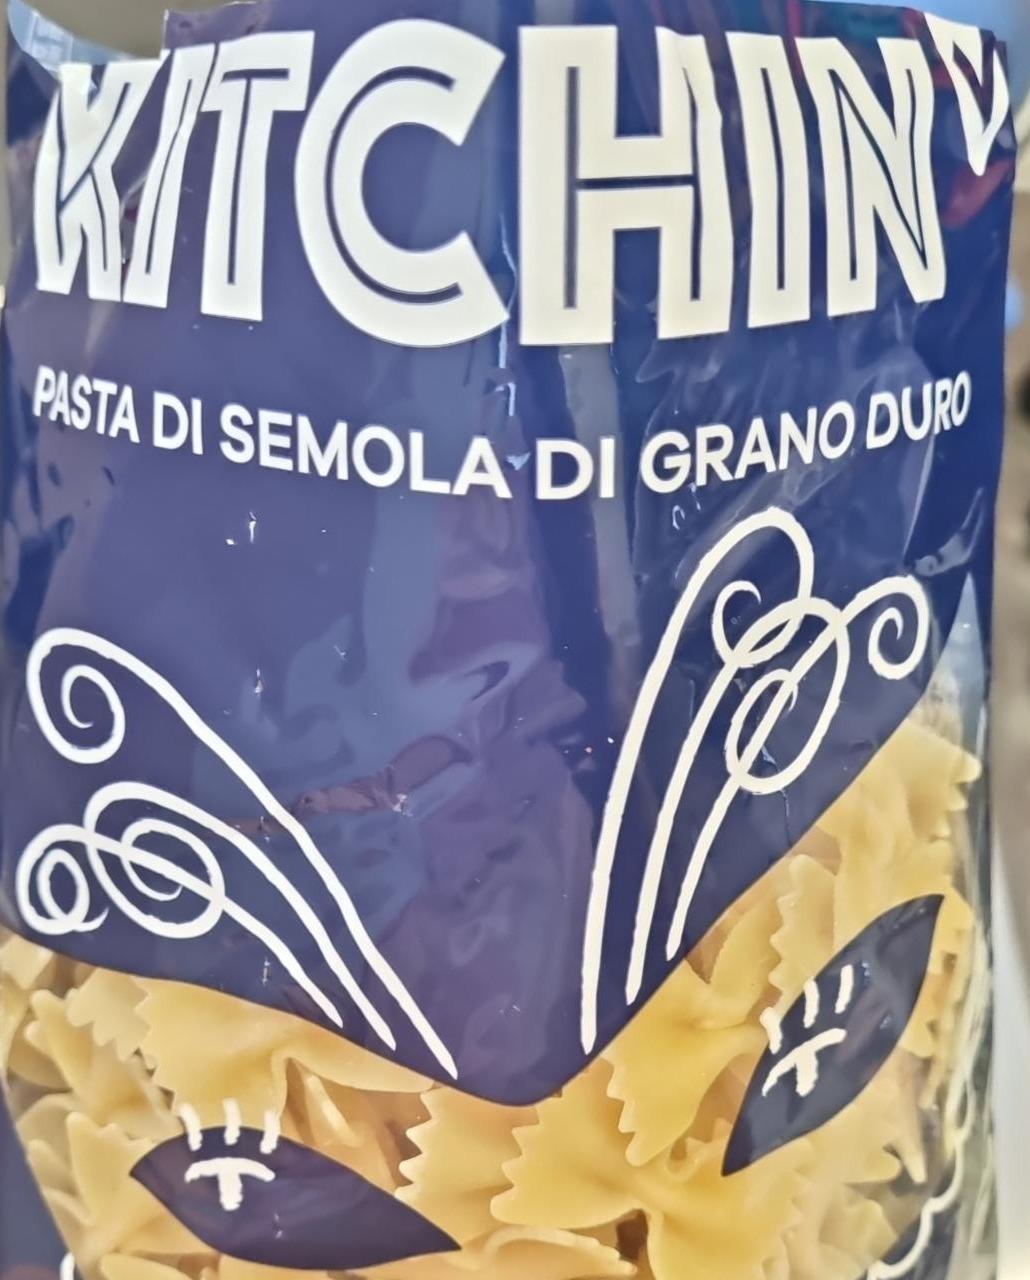 Képek - Pasta di semola di grano duro Kitchin